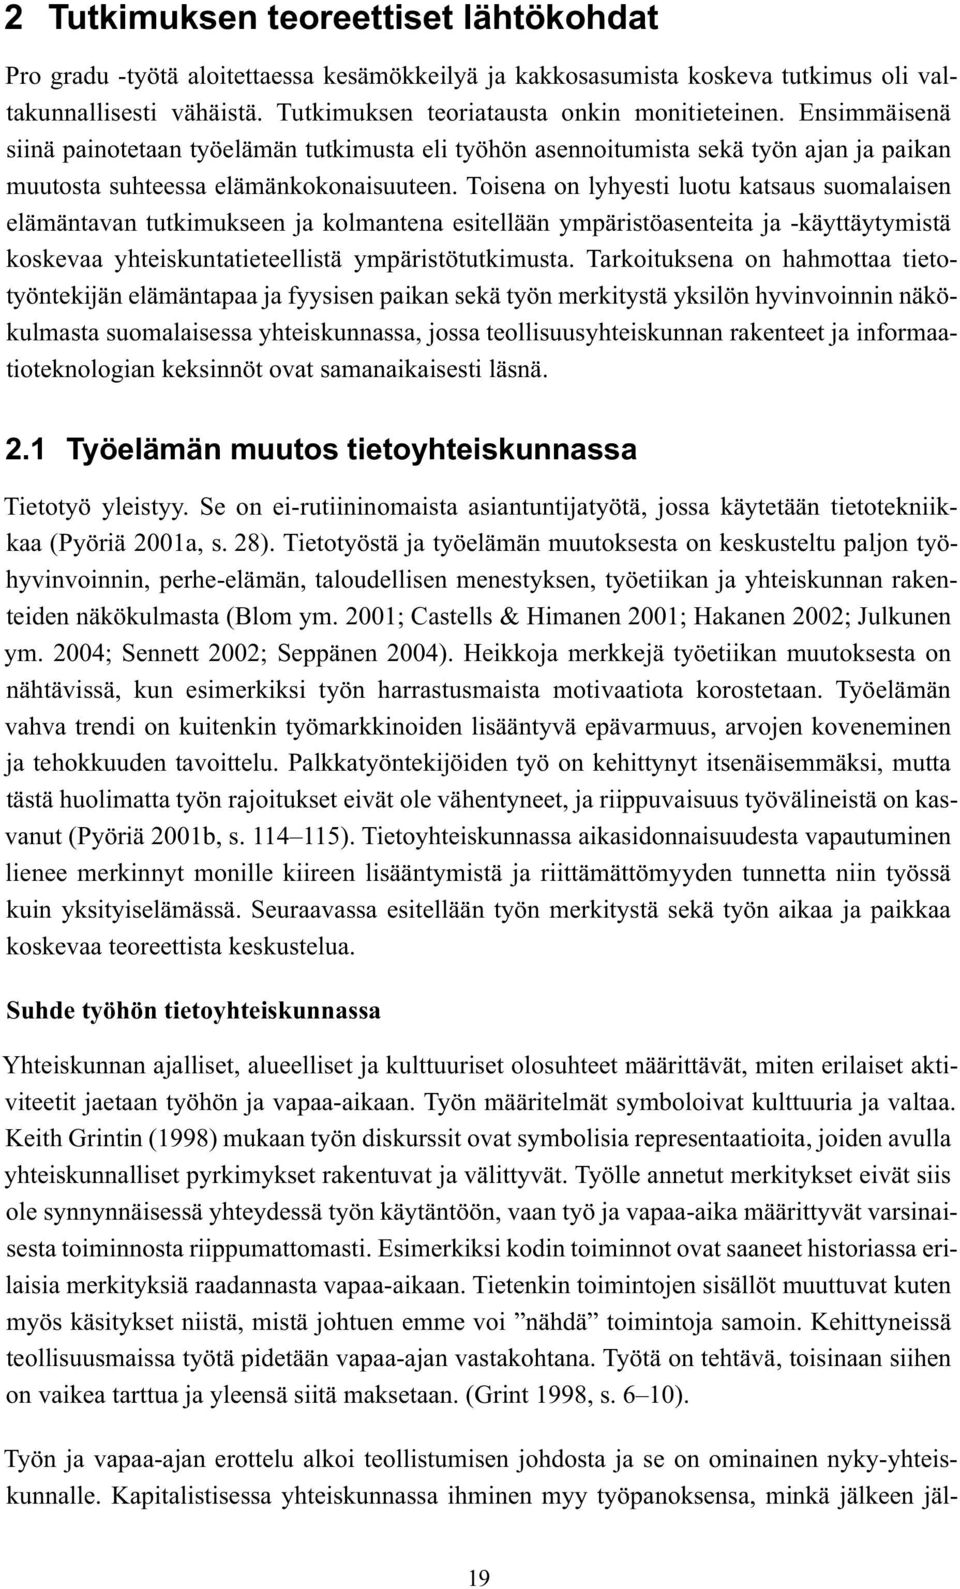 Toisena on lyhyesti luotu katsaus suomalaisen elämäntavan tutkimukseen ja kolmantena esitellään ympäristöasenteita ja -käyttäytymistä koskevaa yhteiskuntatieteellistä ympäristötutkimusta.